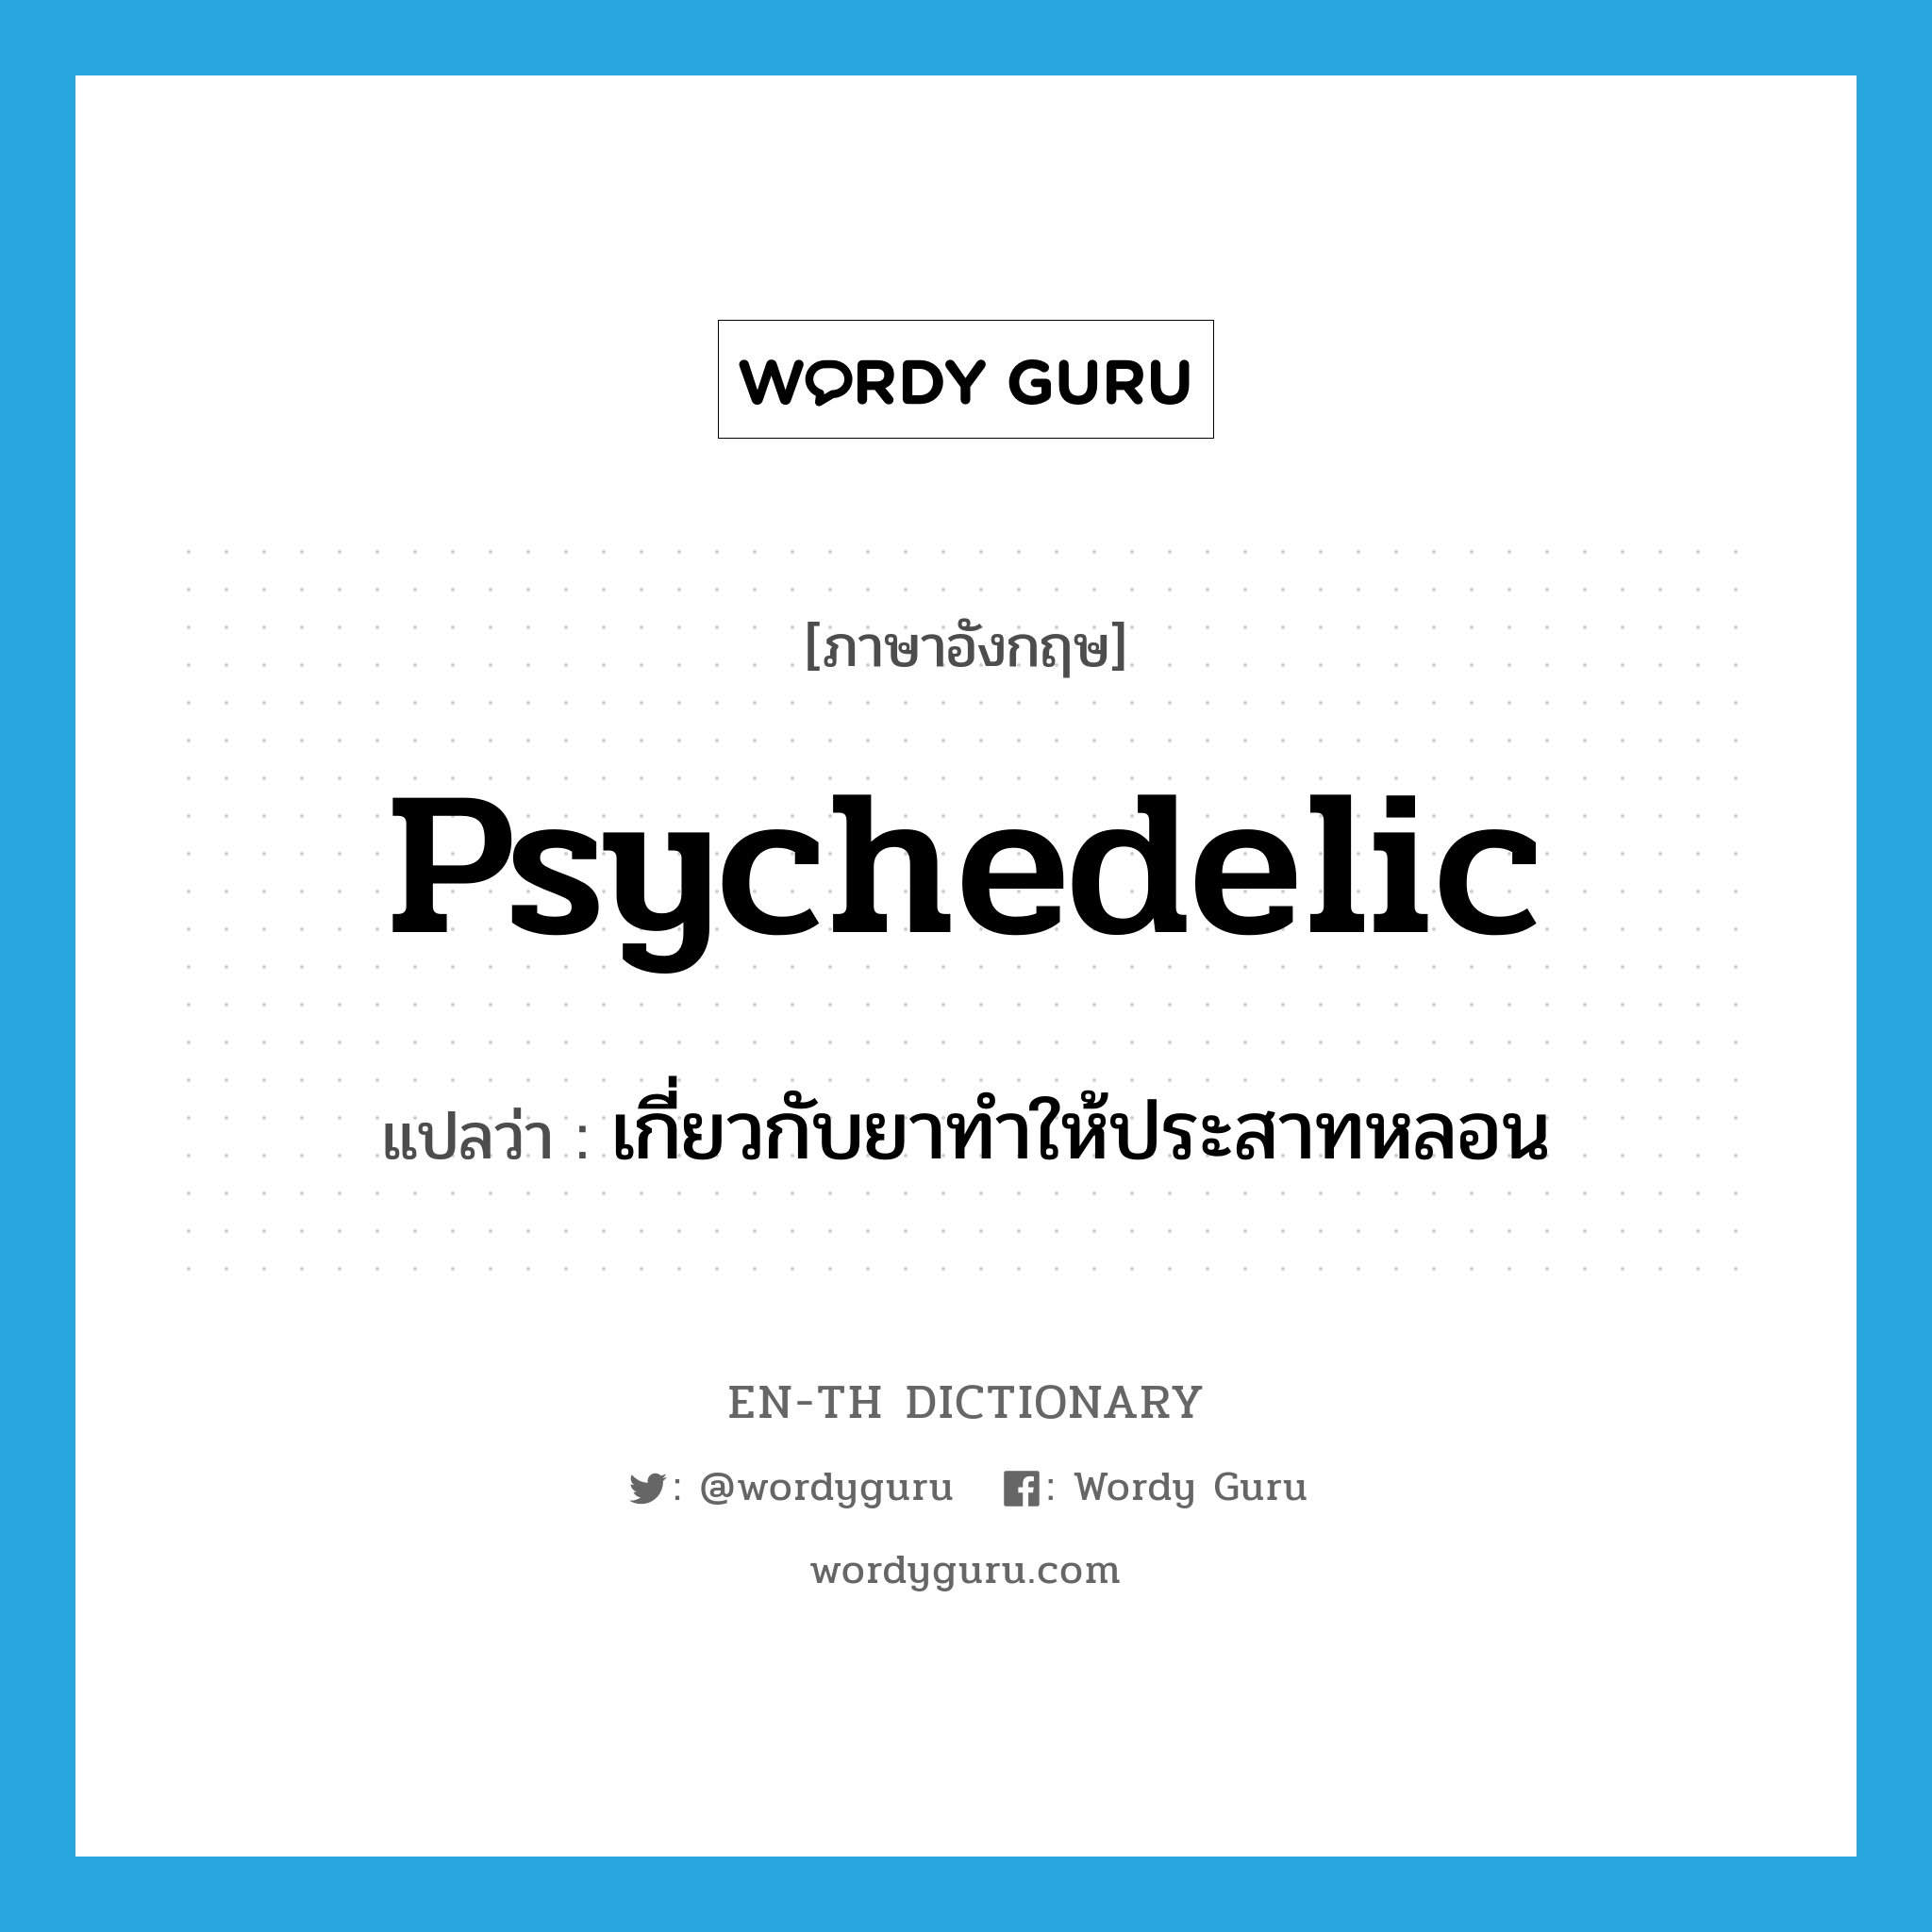 เกี่ยวกับยาทำให้ประสาทหลอน ภาษาอังกฤษ?, คำศัพท์ภาษาอังกฤษ เกี่ยวกับยาทำให้ประสาทหลอน แปลว่า psychedelic ประเภท ADJ หมวด ADJ